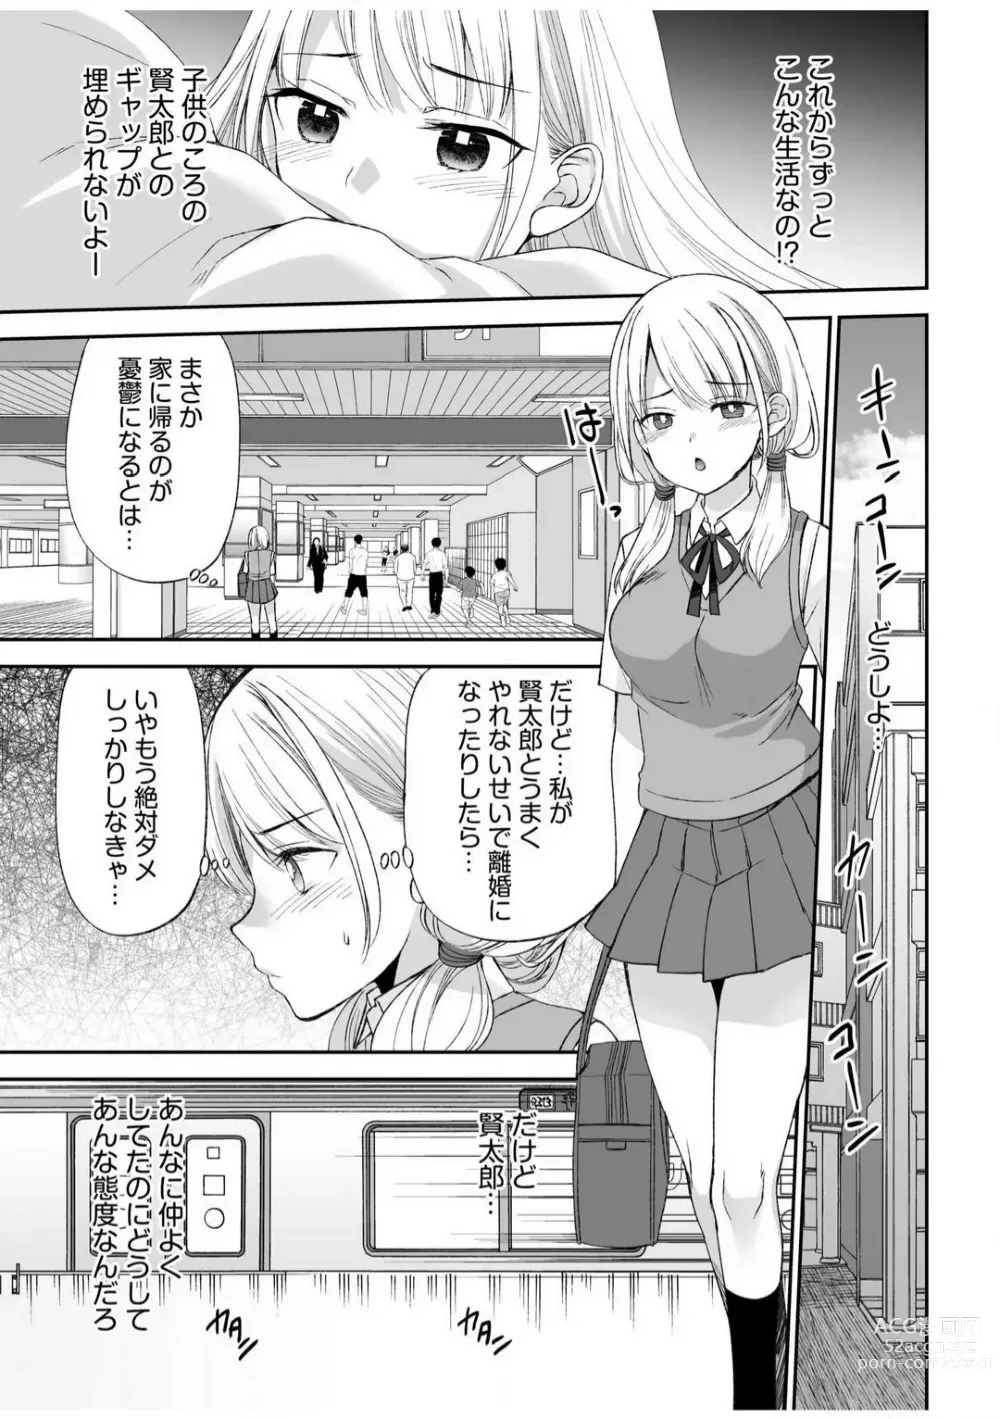 Page 8 of manga Yada... Naka Ippai Shinaide...